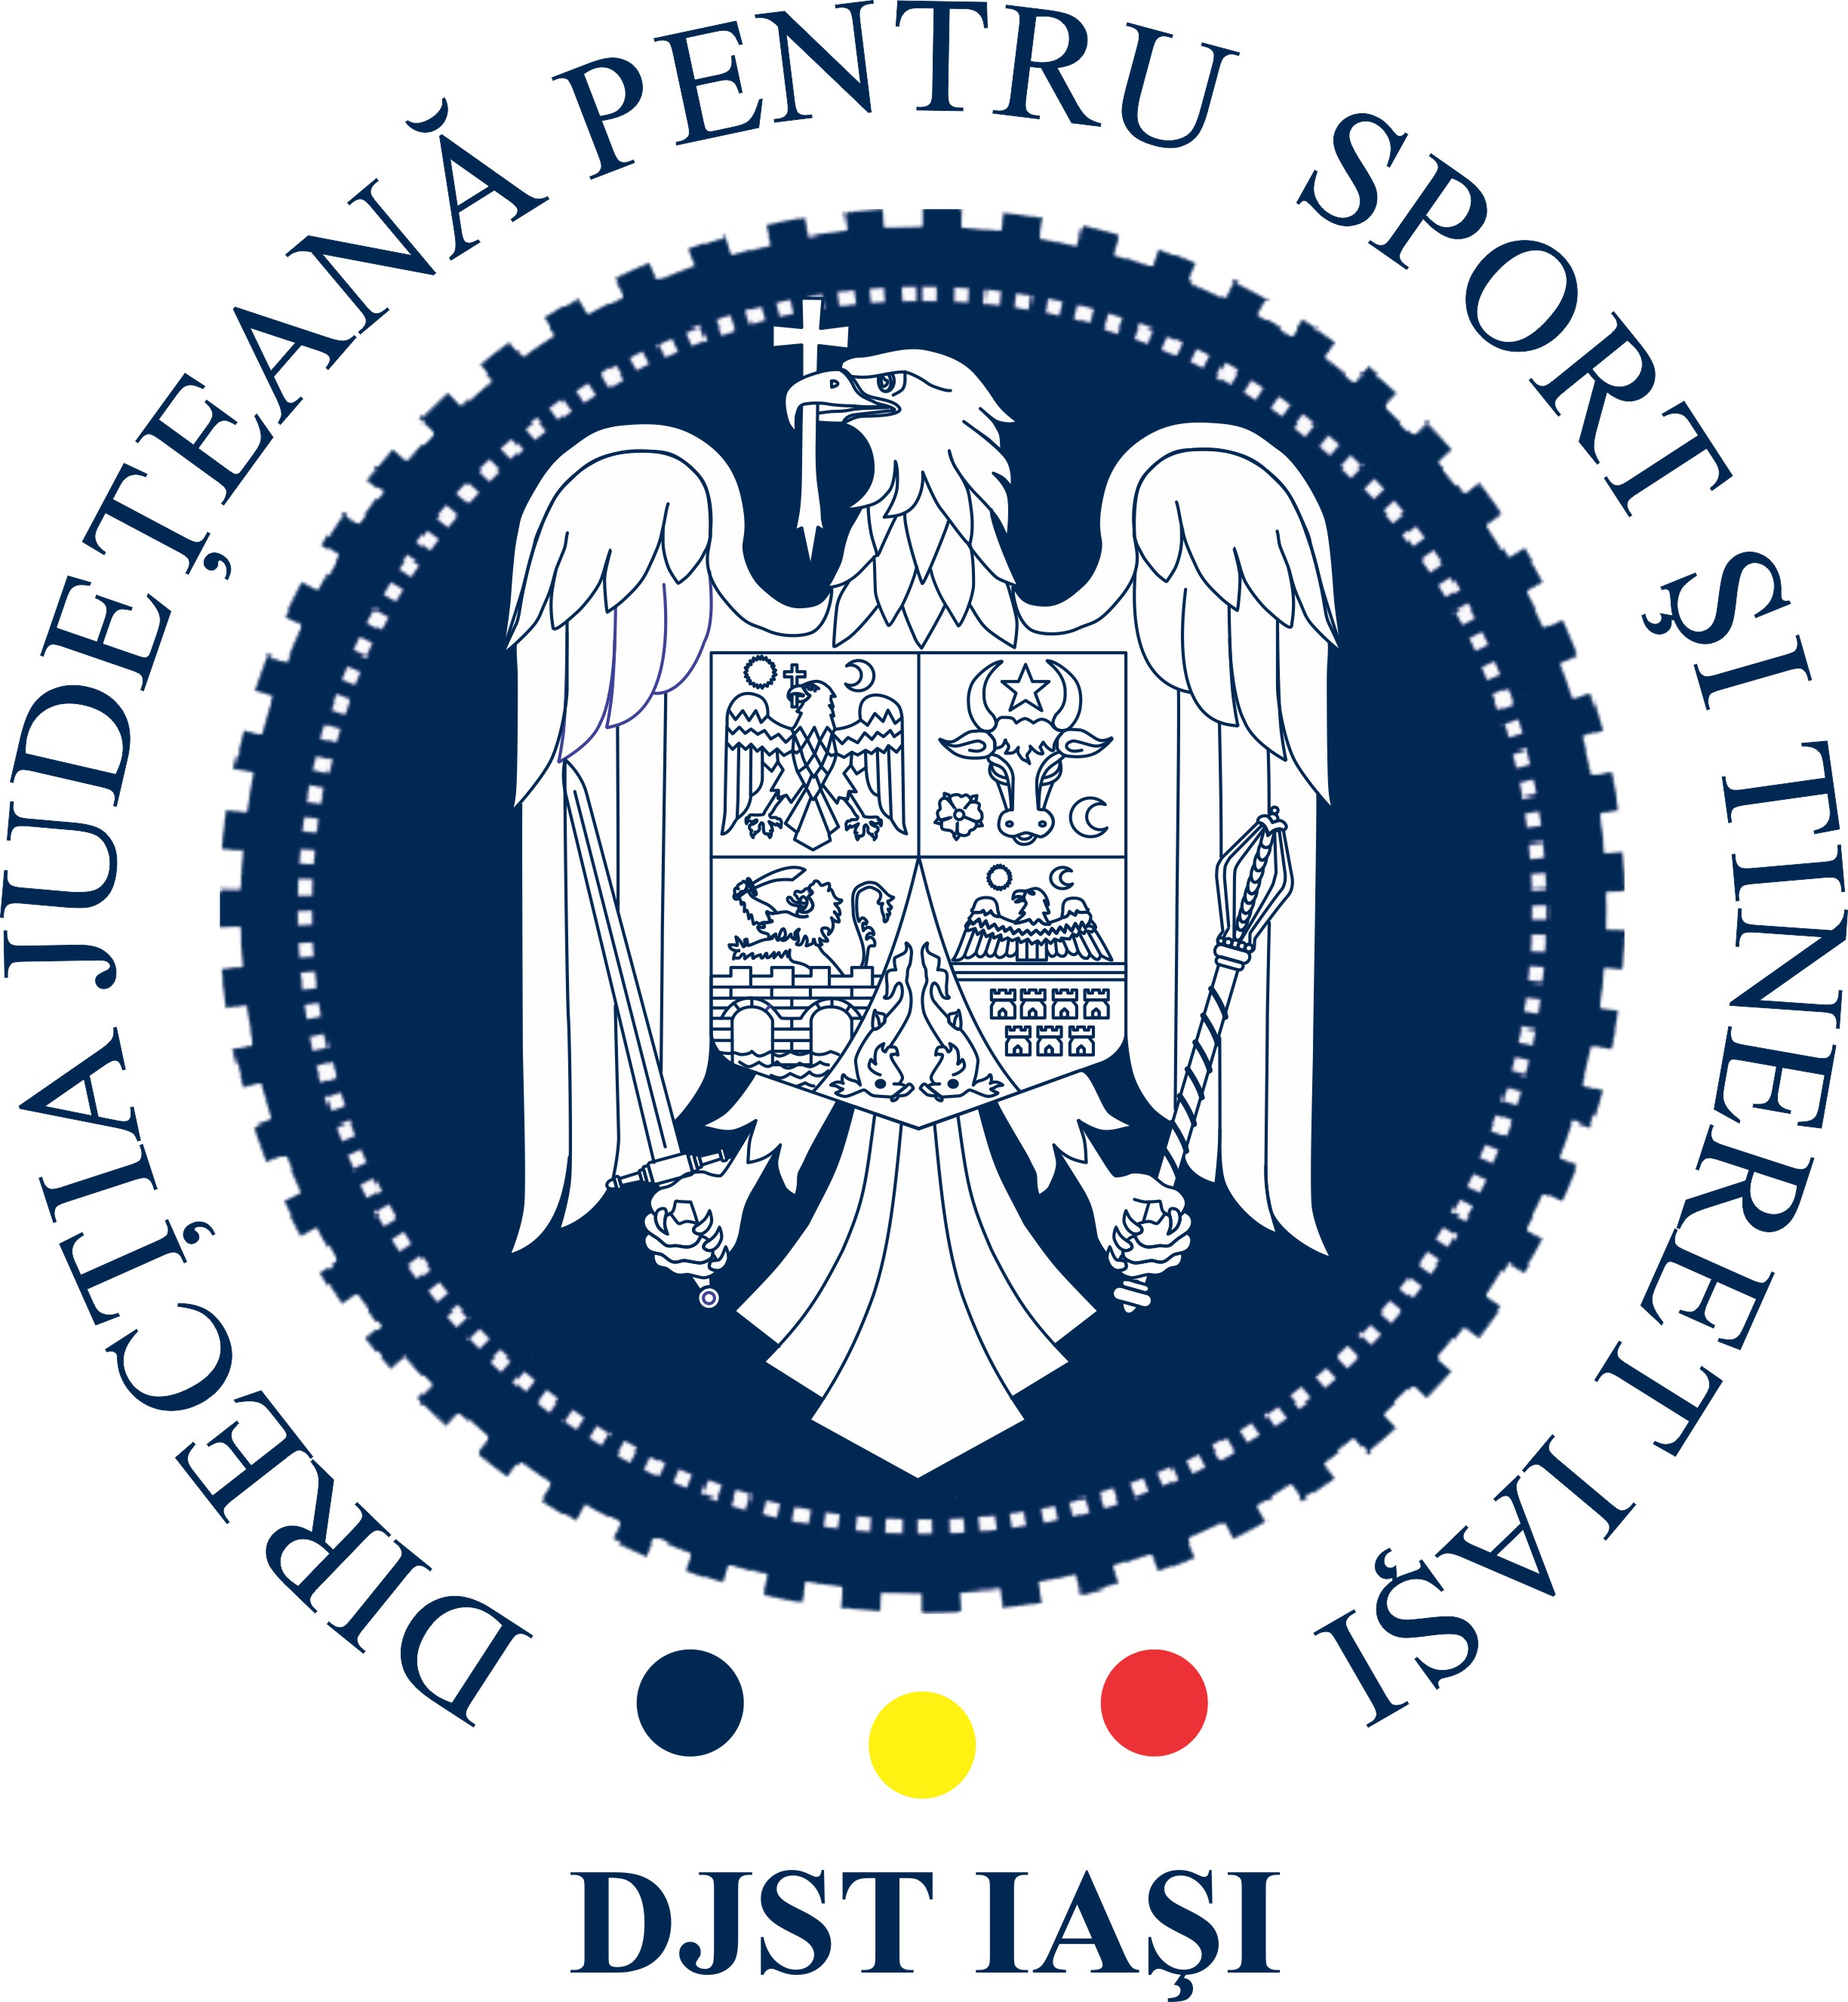 Direcția Județeană pentru Sport și Tineret Iași